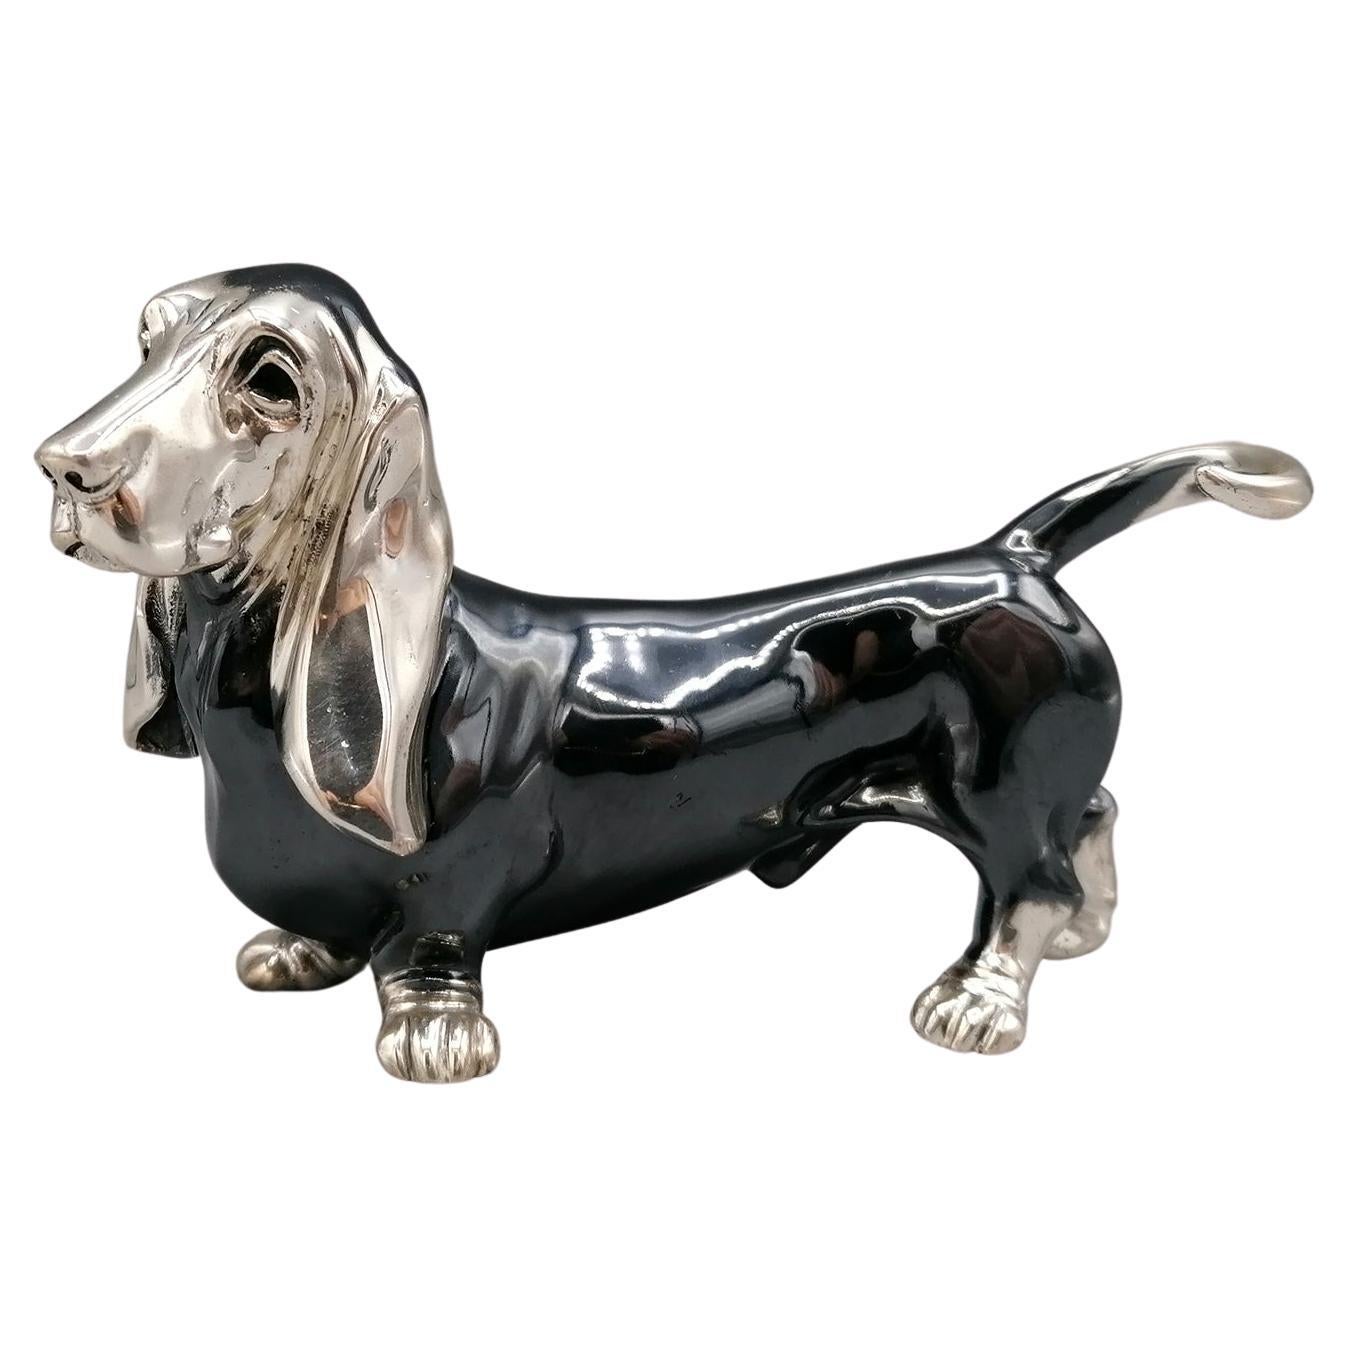 Statuette aus massivem Silber des 20. Jahrhunderts, die einen Basset-Hundhund darstellt